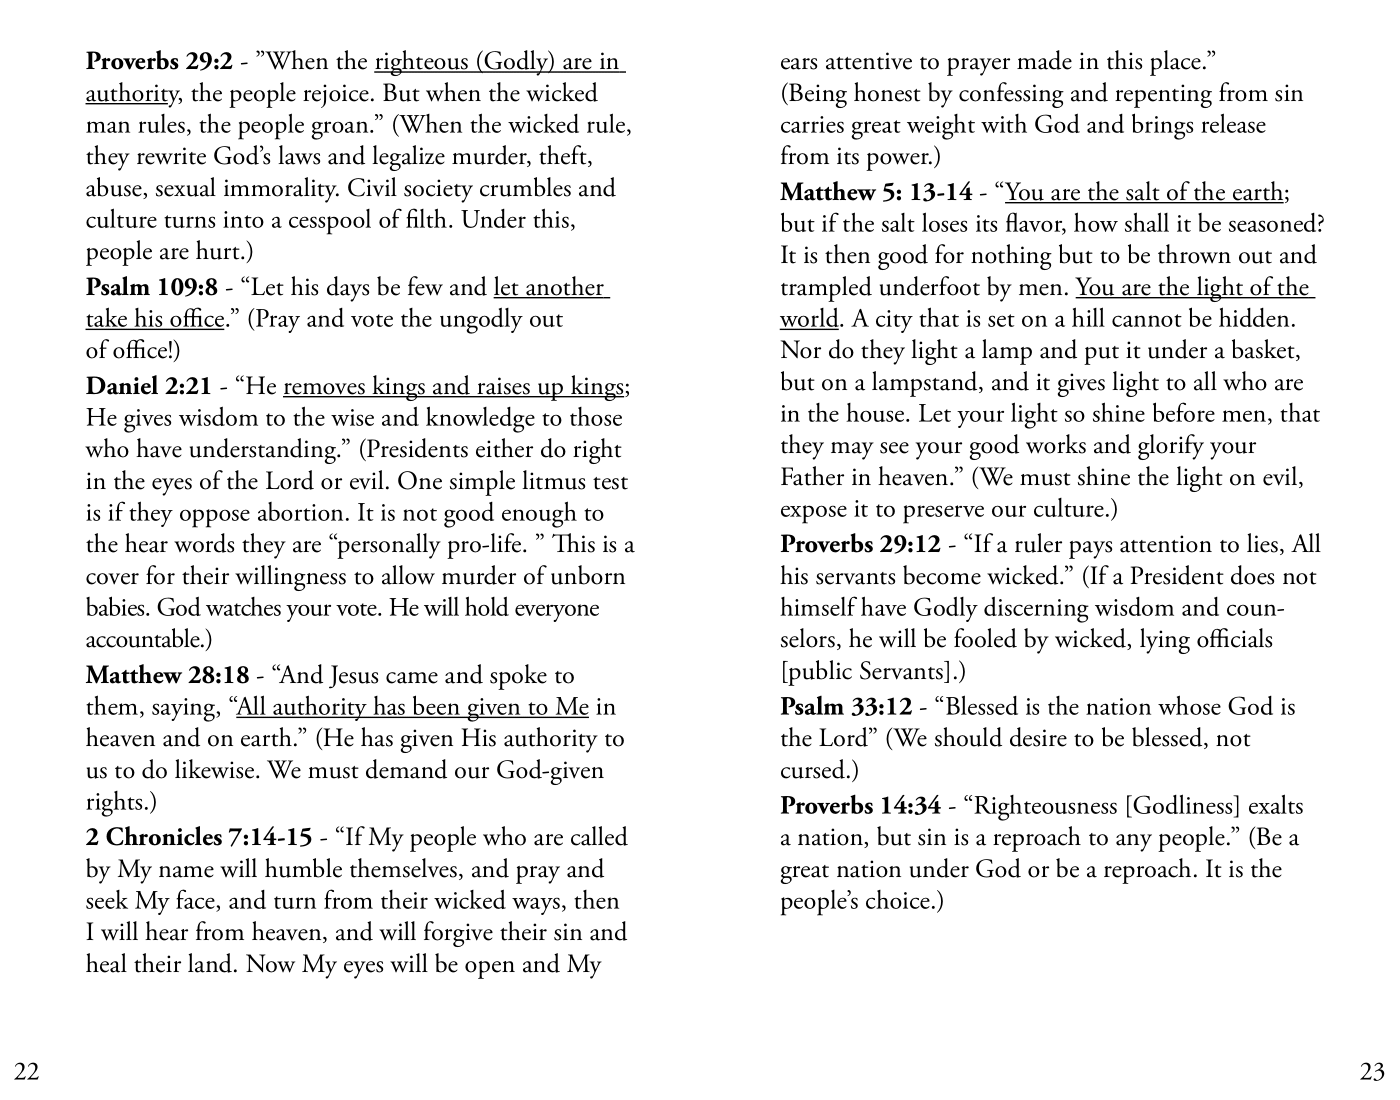 Biblical Voter Booklet V2 (1)-13.png